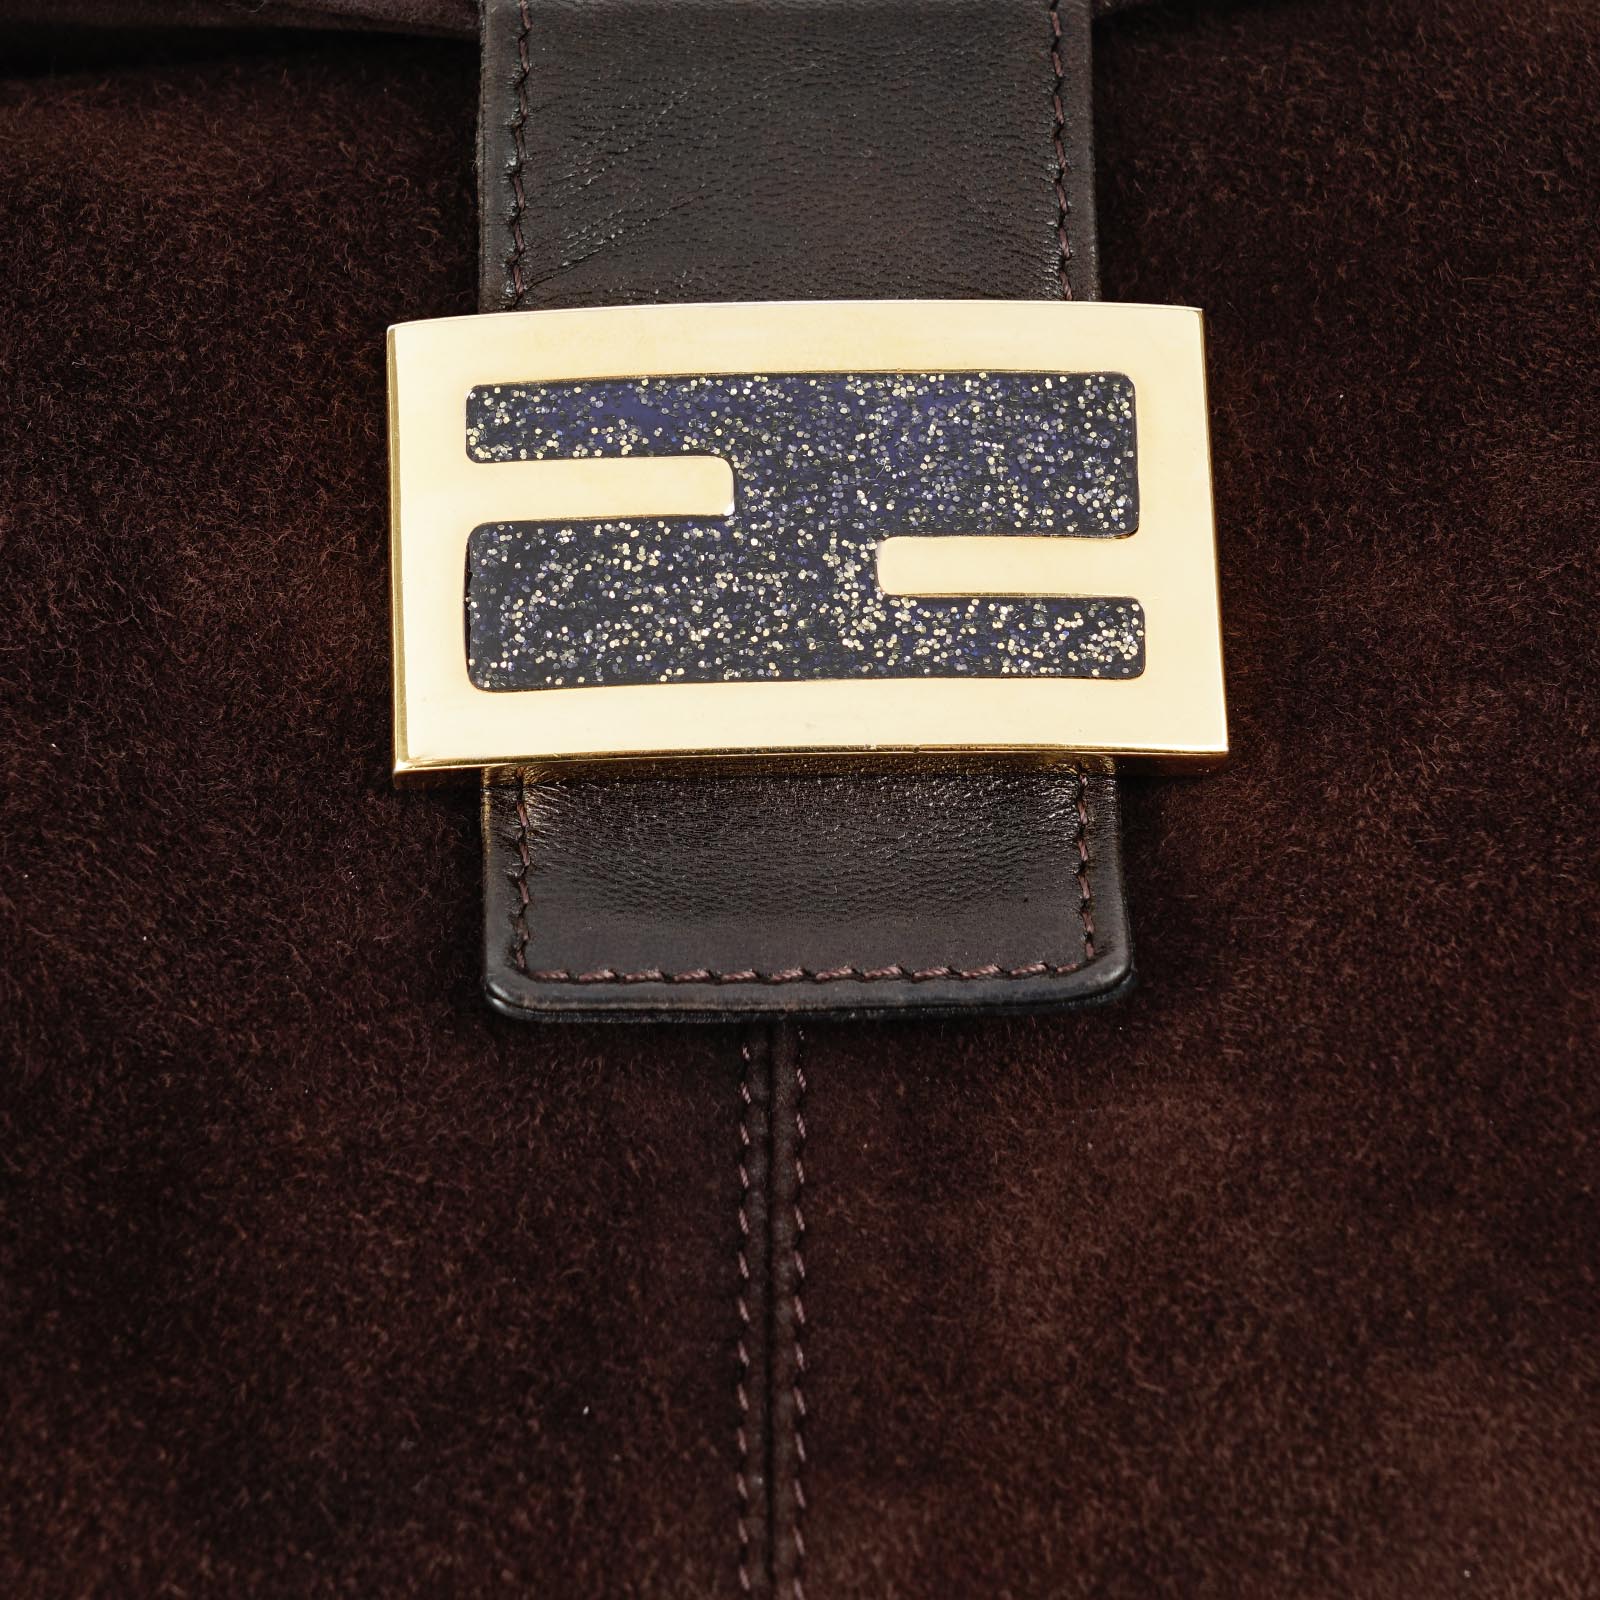 Baguette Shoulder Bag - FENDI - Affordable Luxury image